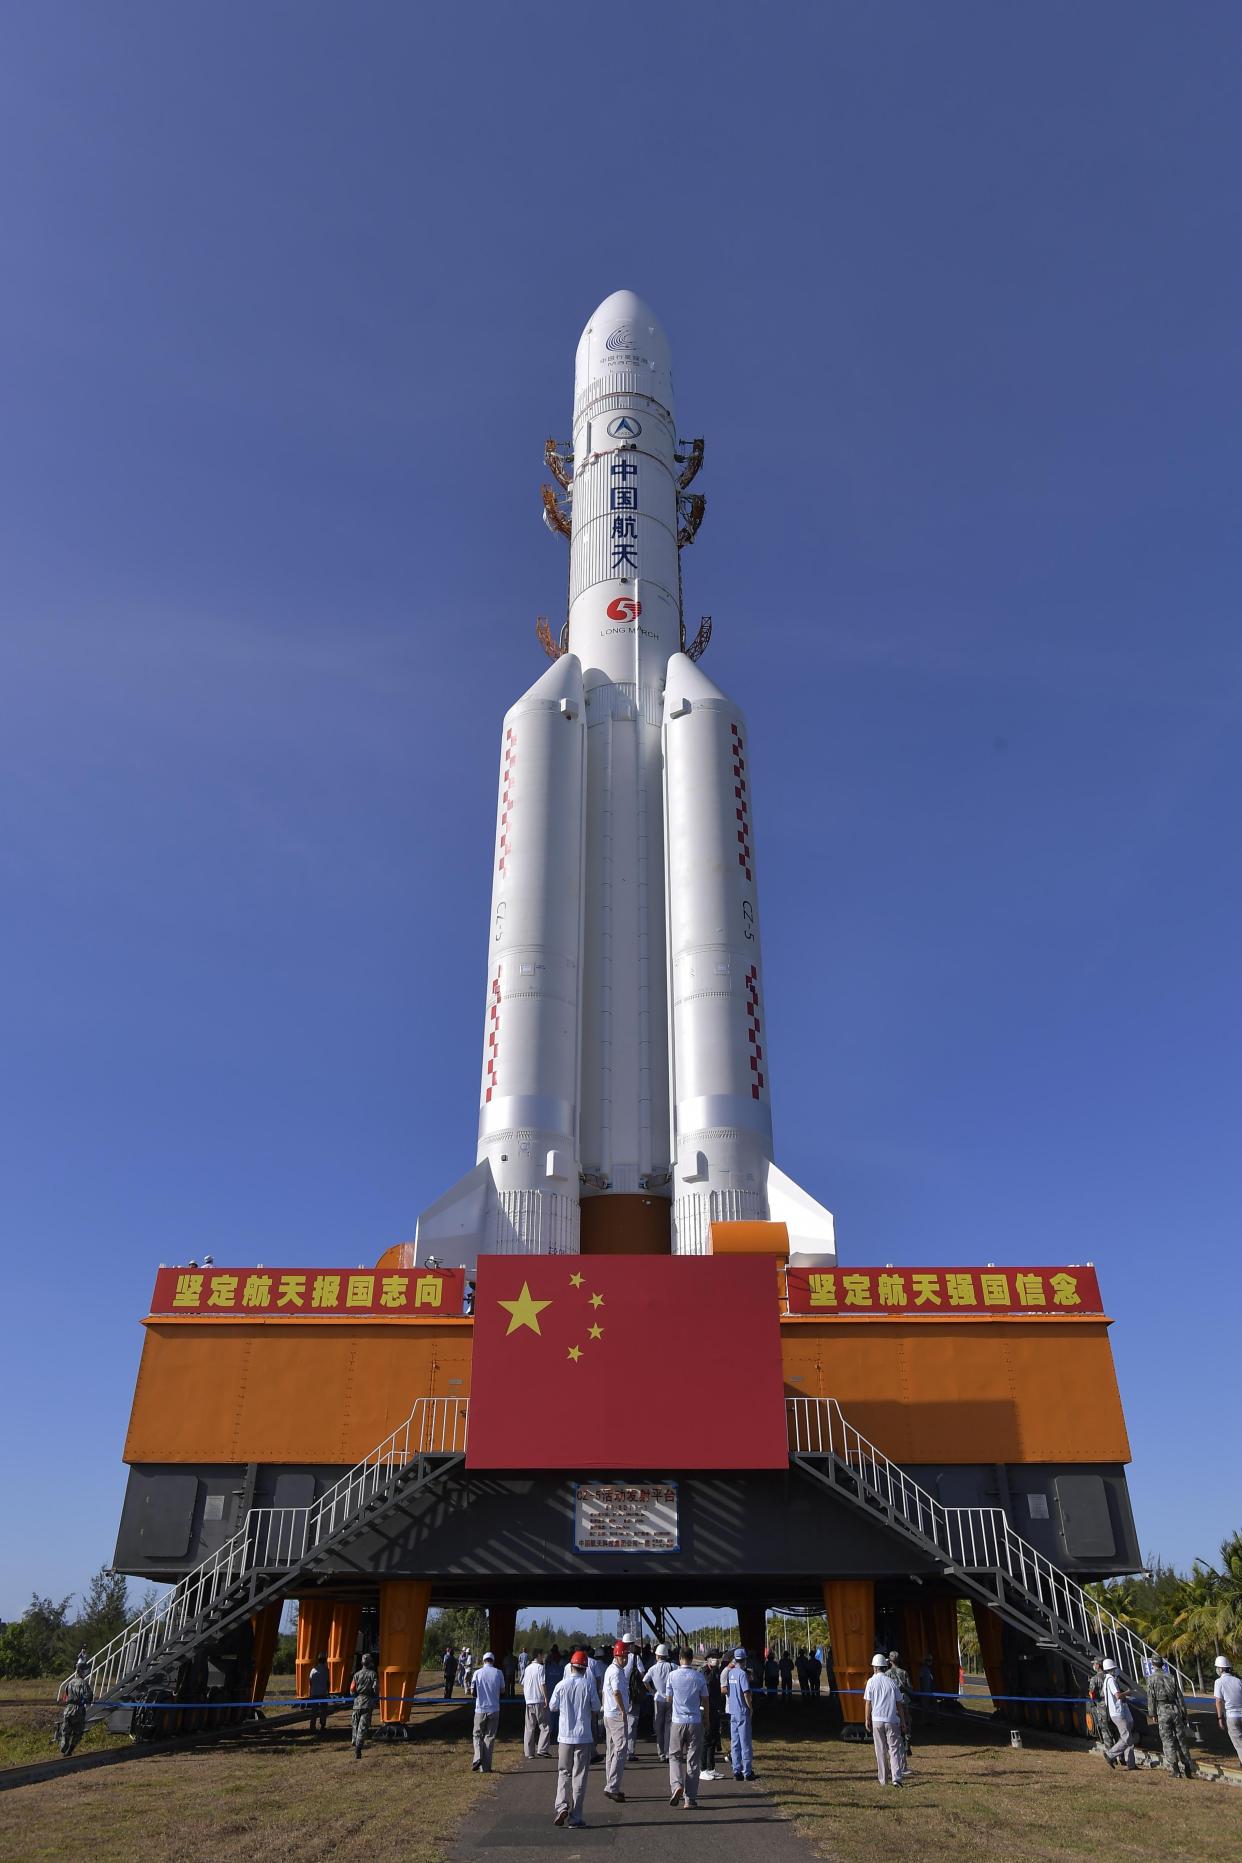 长征五号遥四运载火箭垂直转运至发射区 计划择机实施我国首次火星